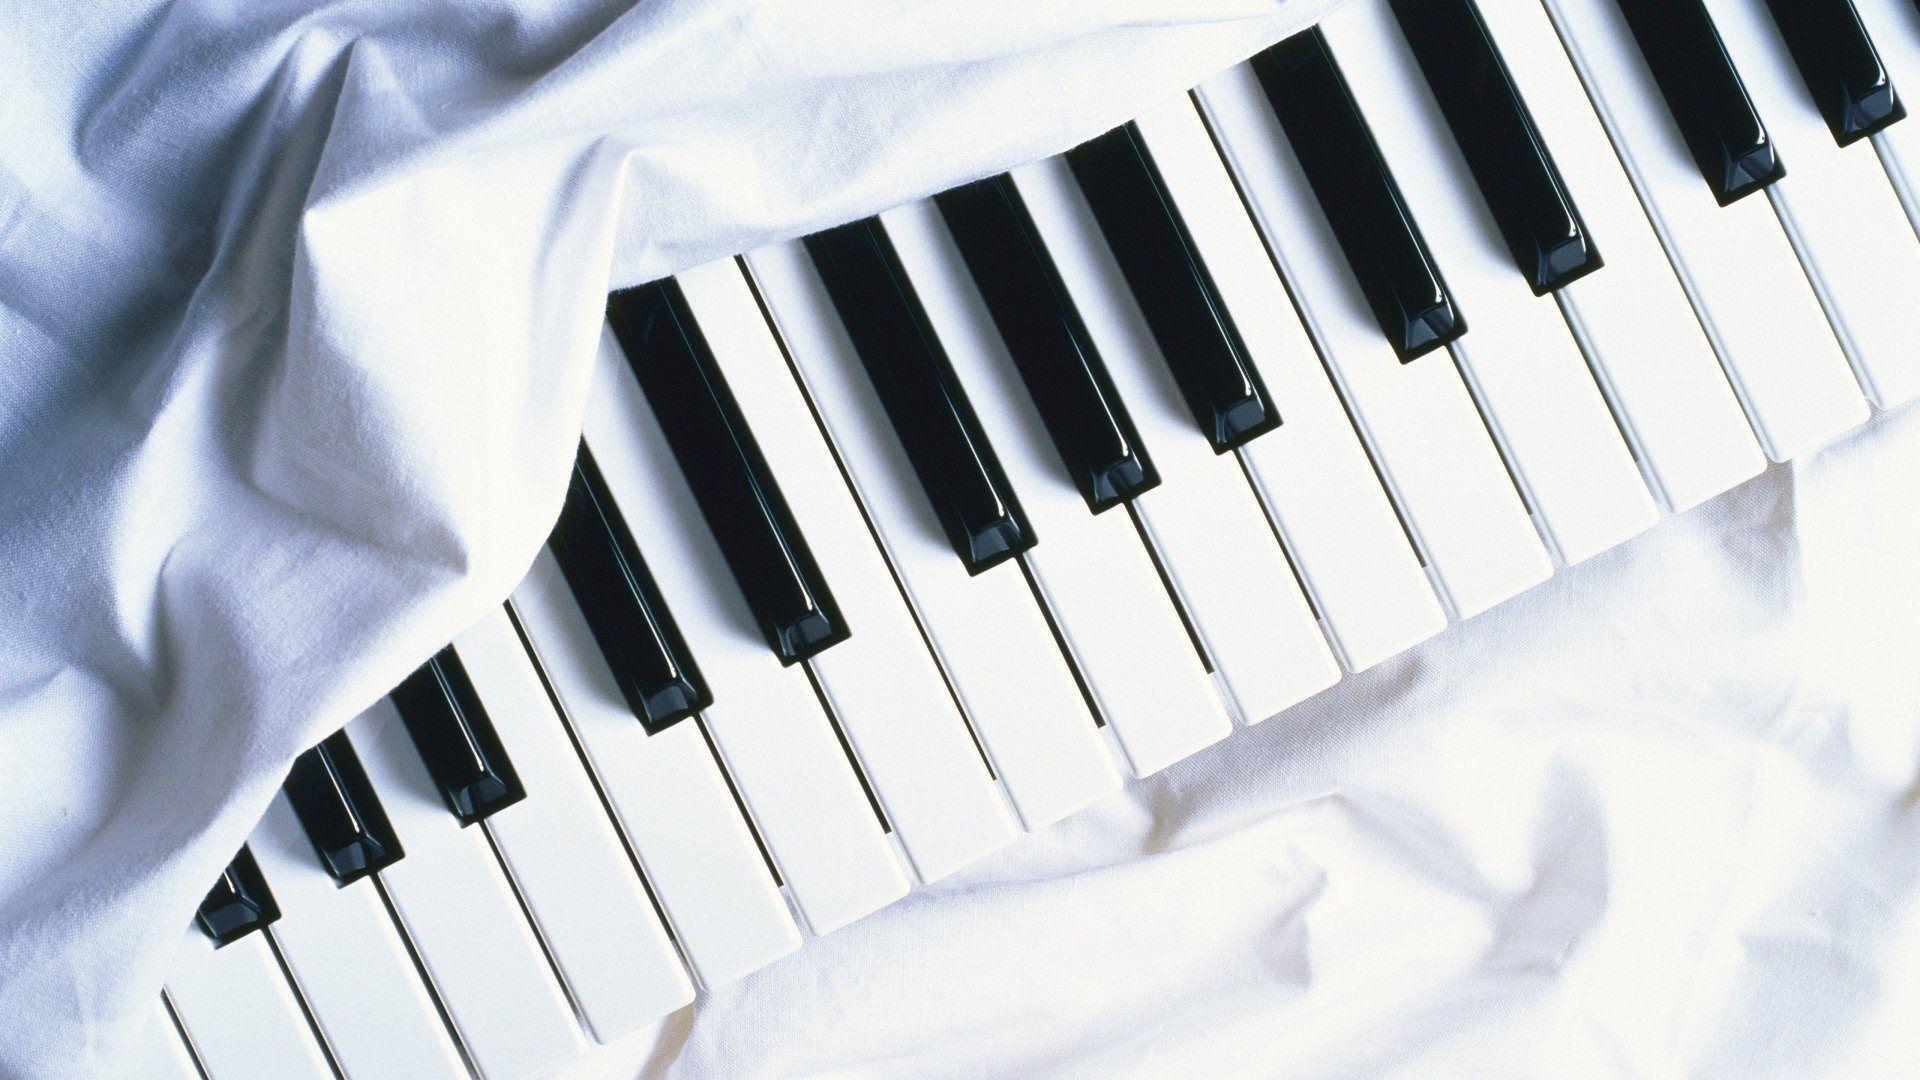 White Piano Wallpaper Image & Picture